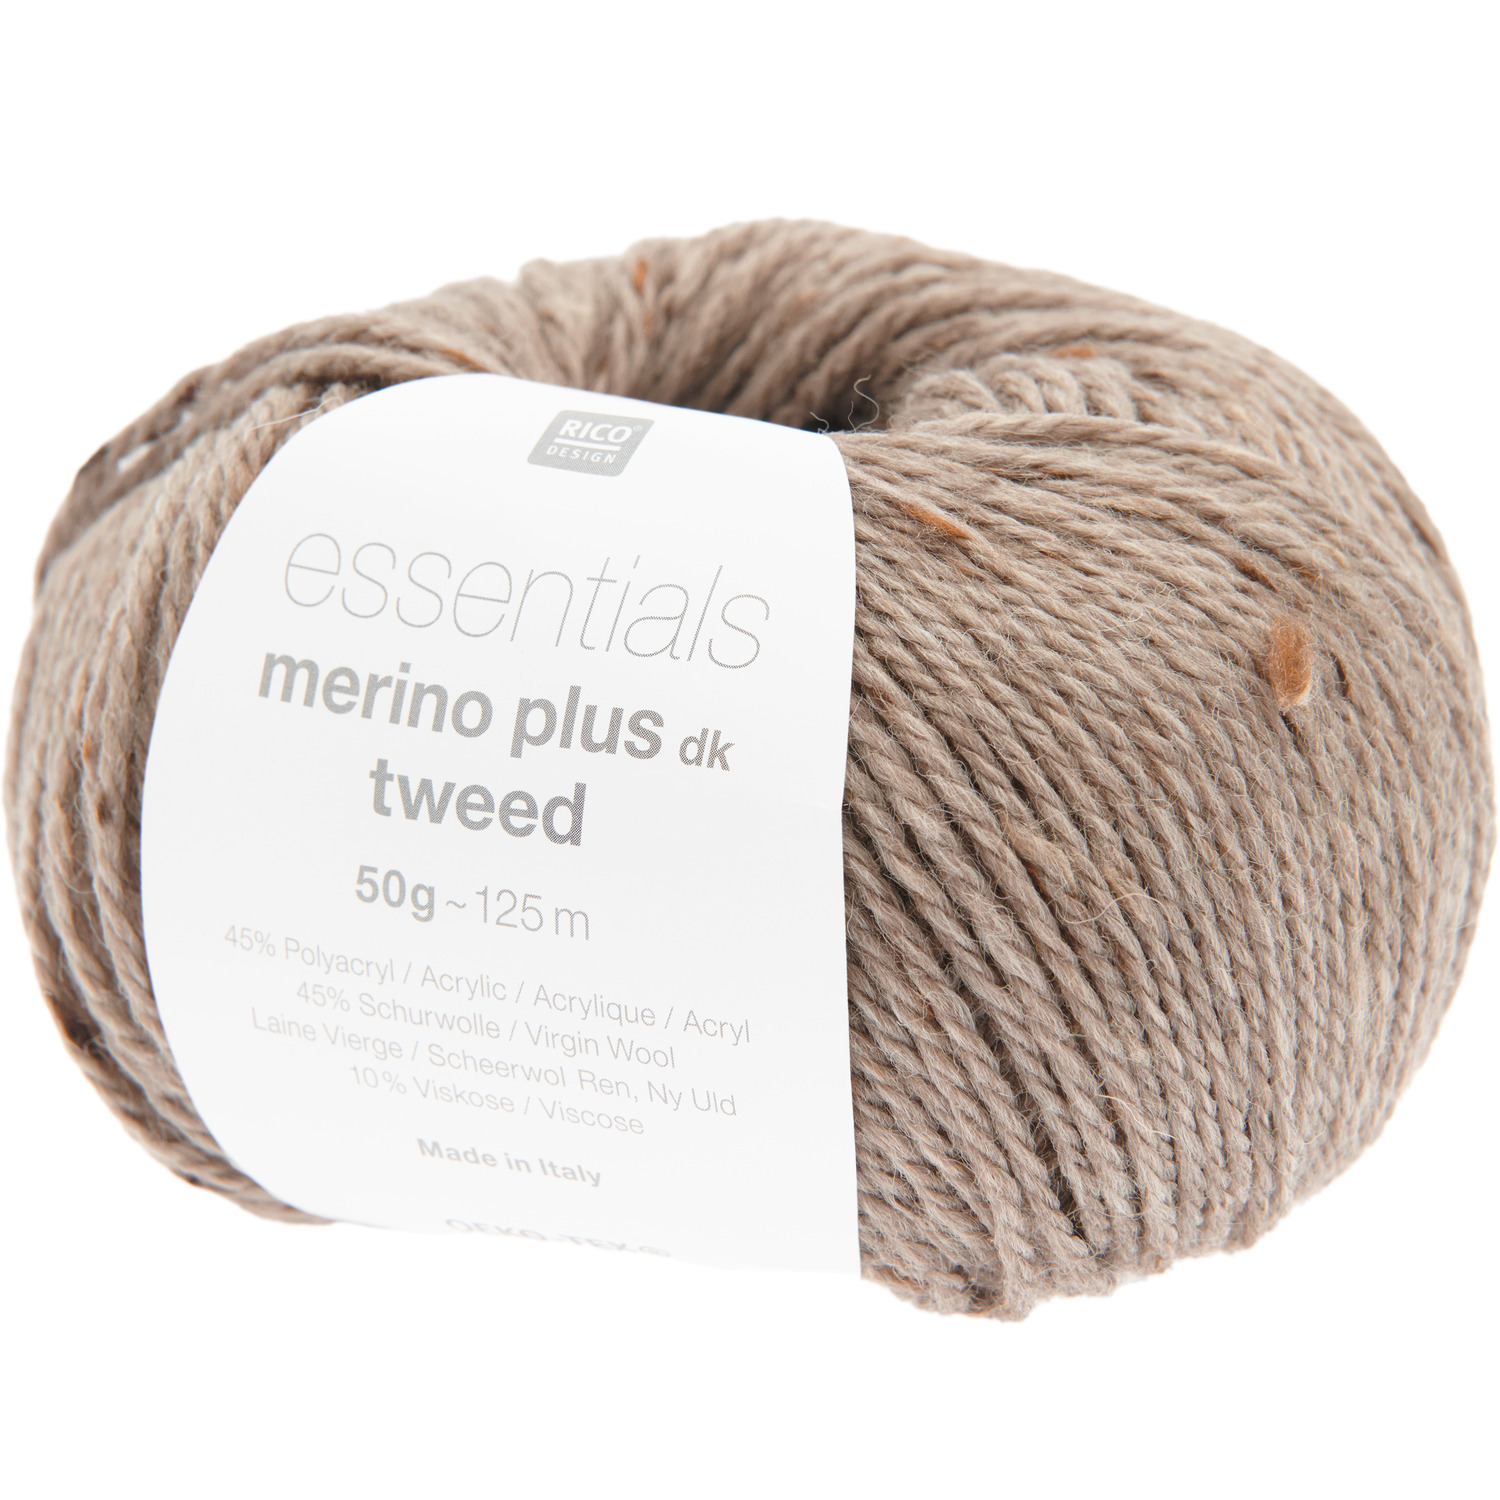 Essentials Merino Plus Tweed dk